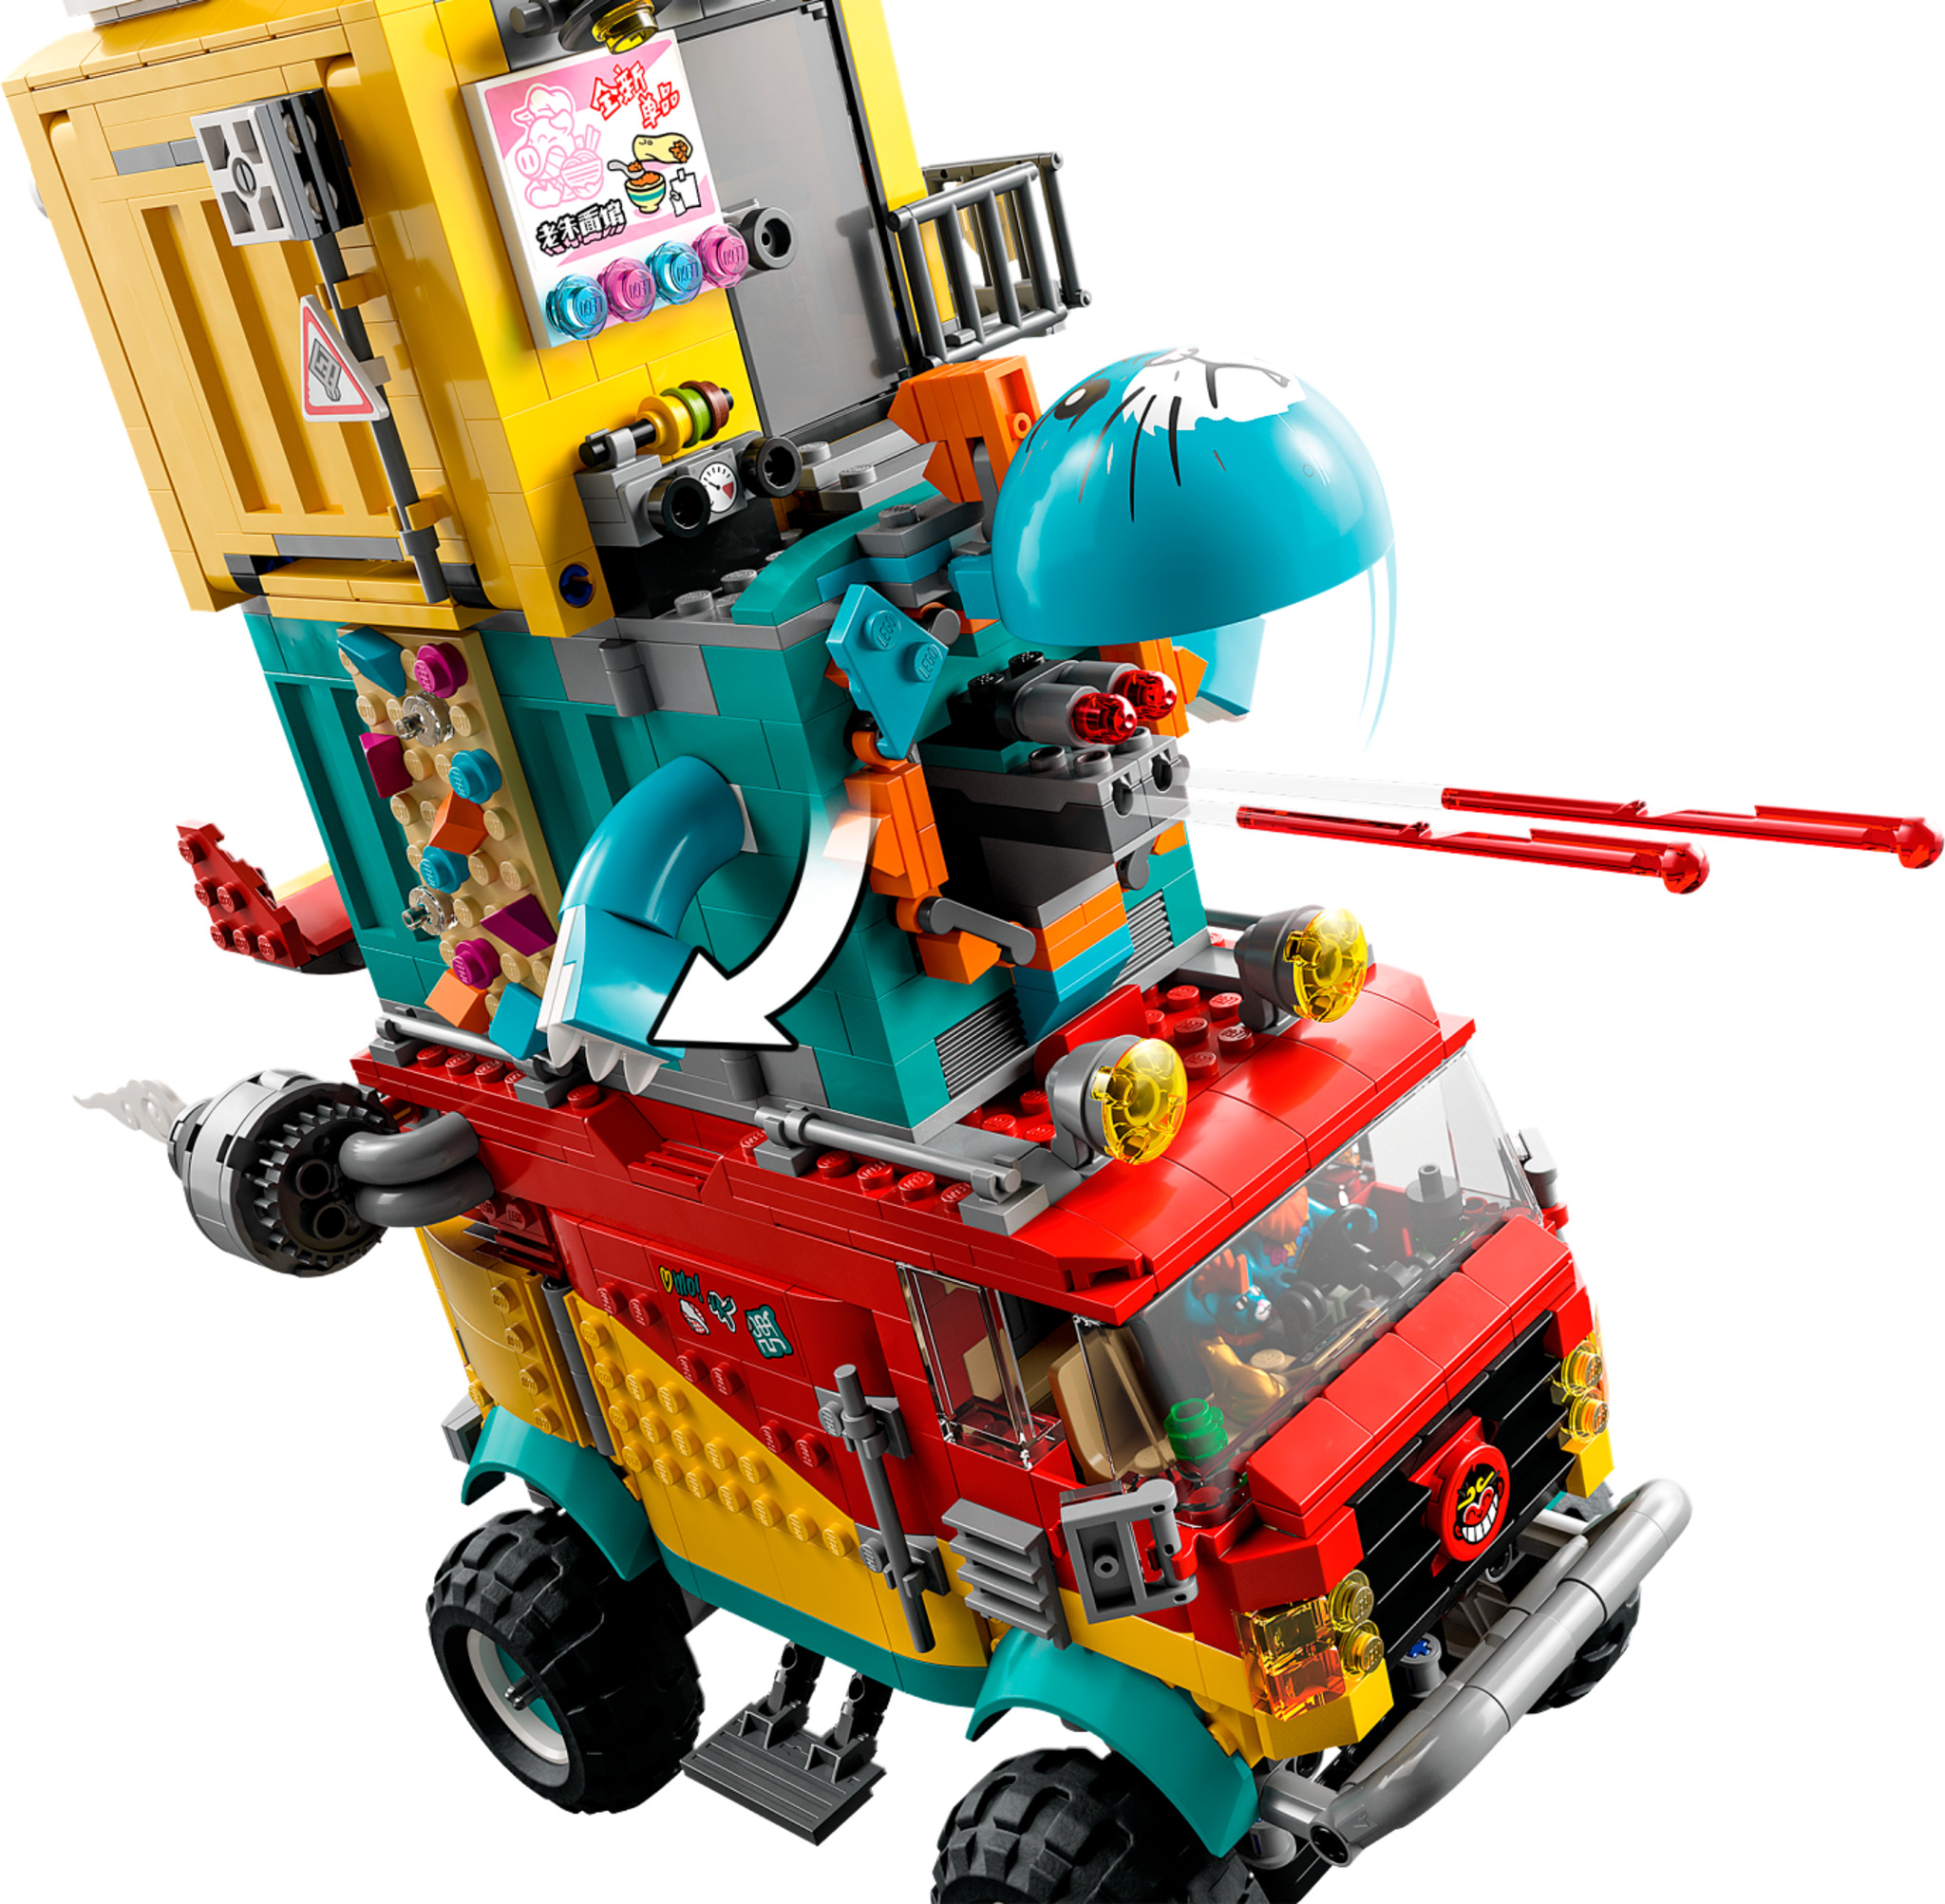 LEGO 80026 - Le char de nouilles de Pigsy LEGO